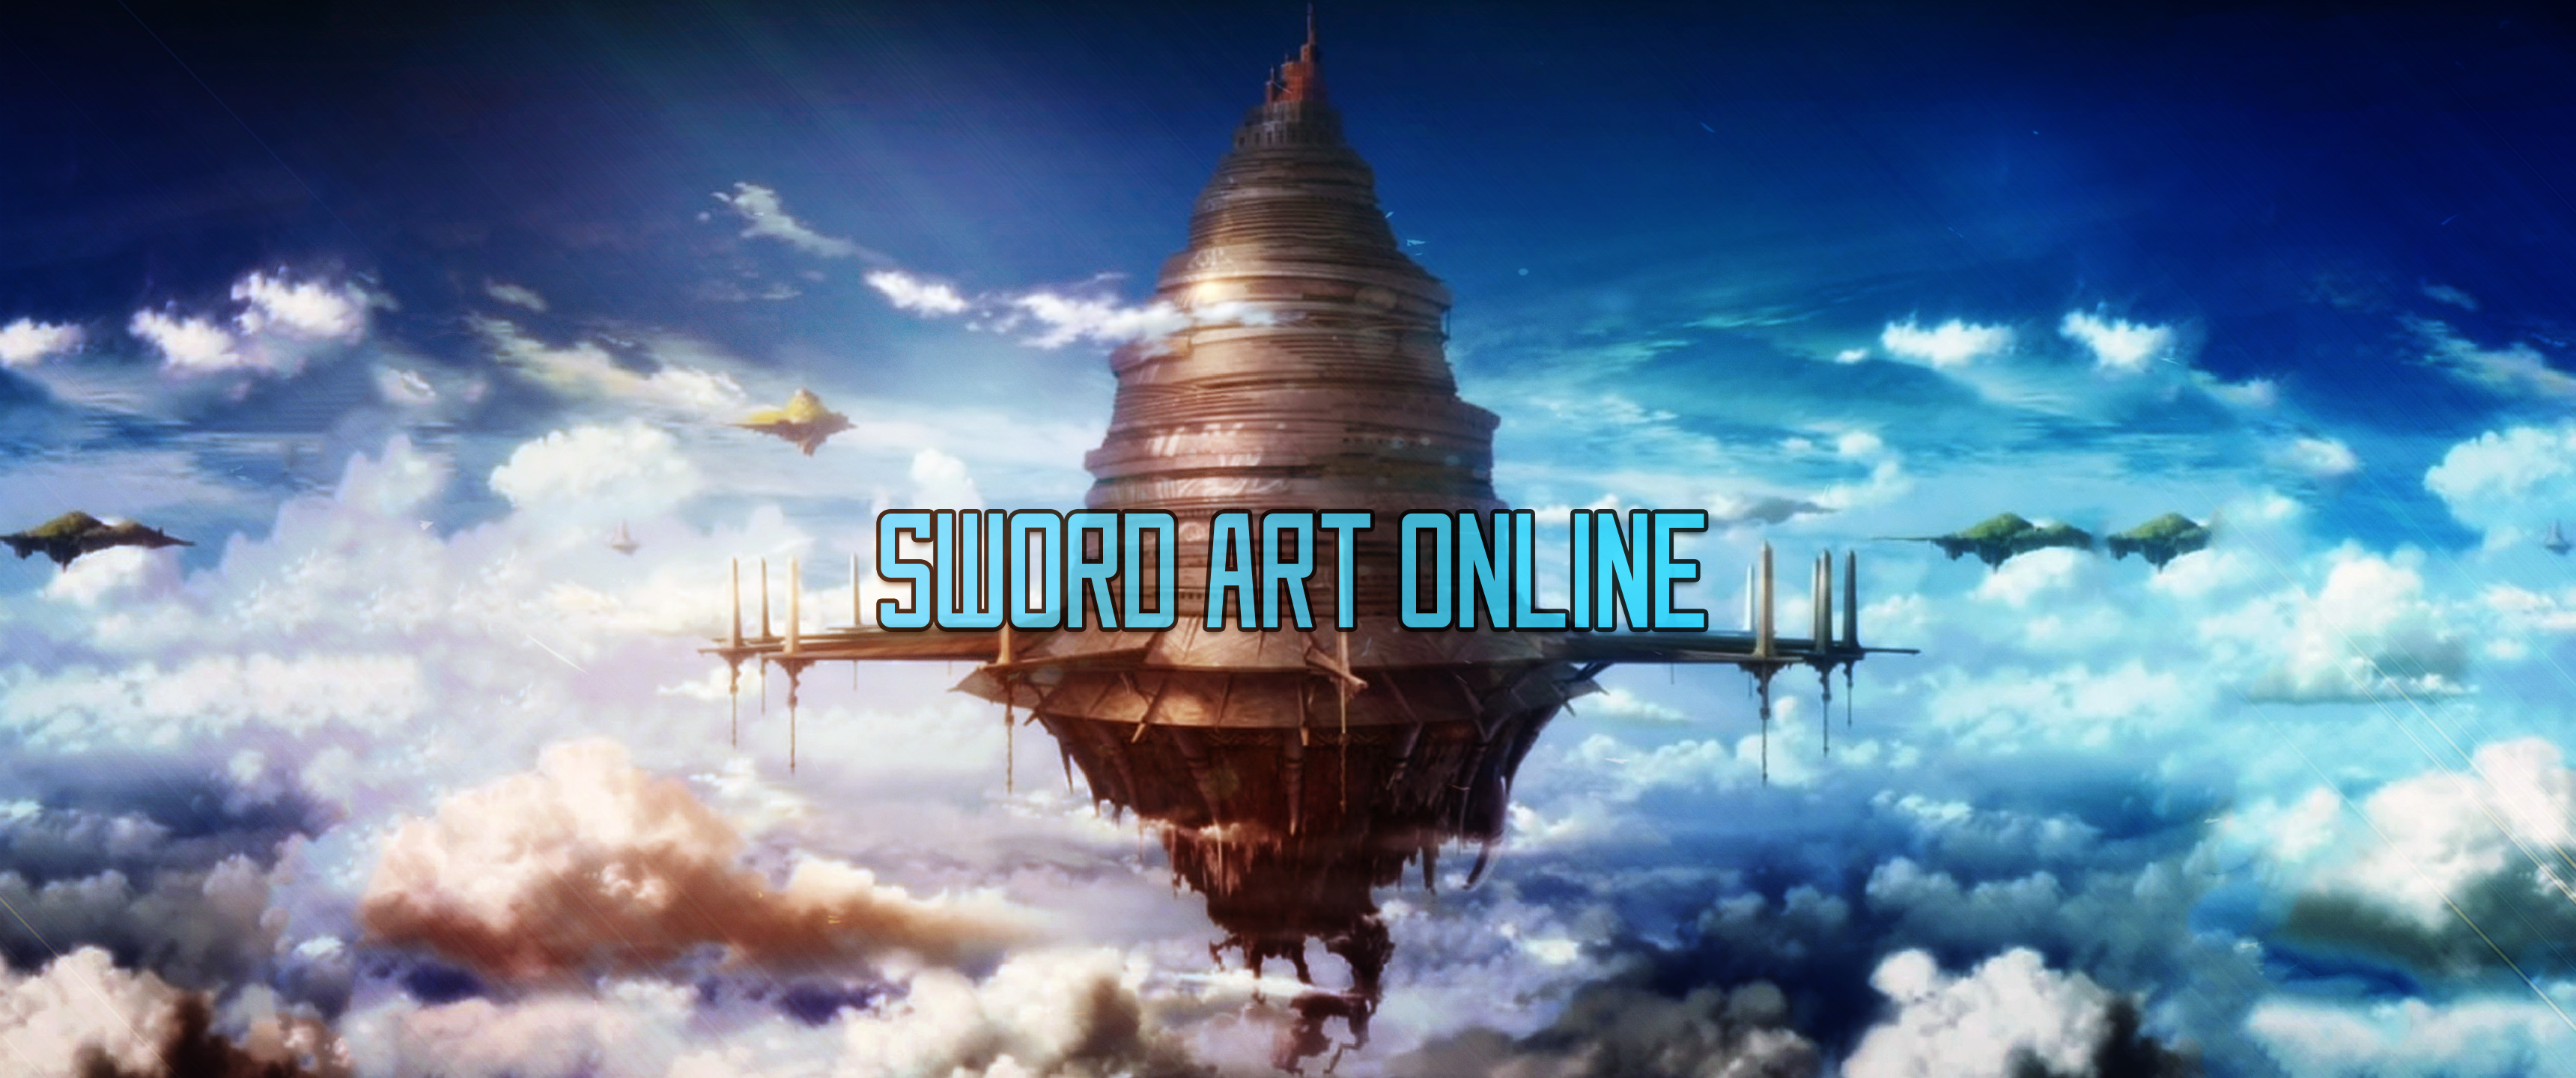 Aincrad Sword Art Online HD Wallpaper Background Image